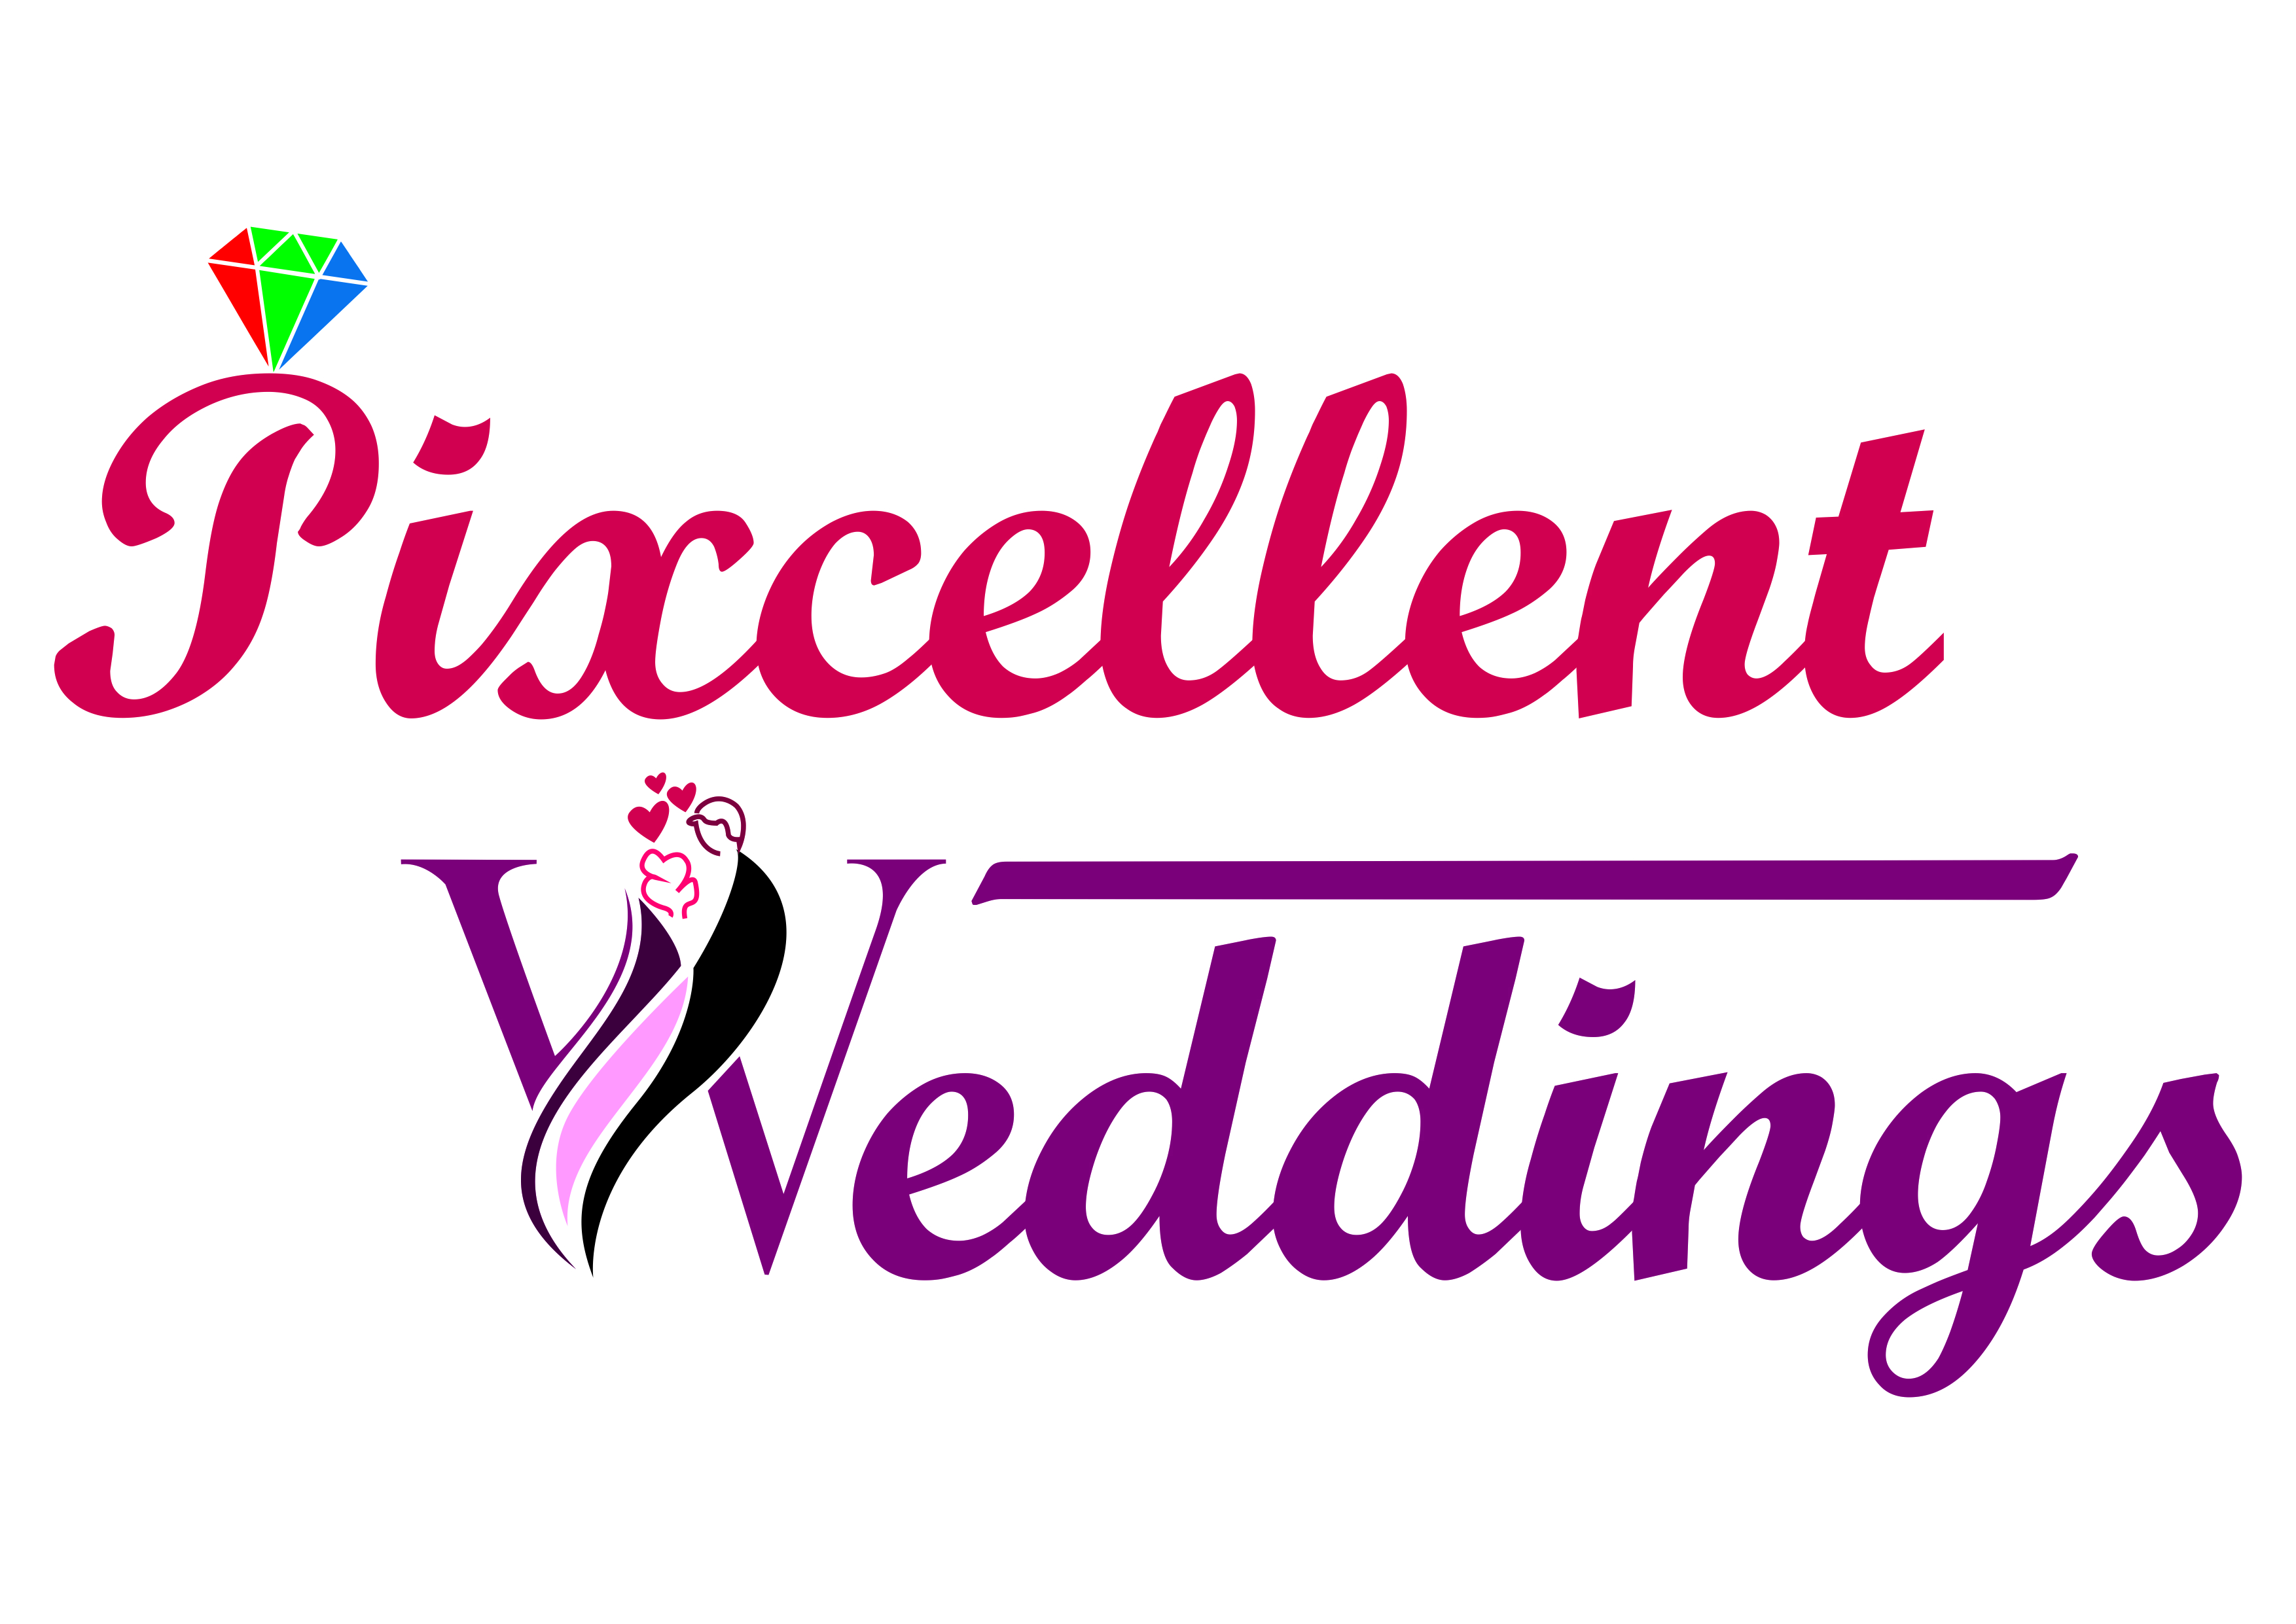 Pixcellent Weddings|Photographer|Event Services